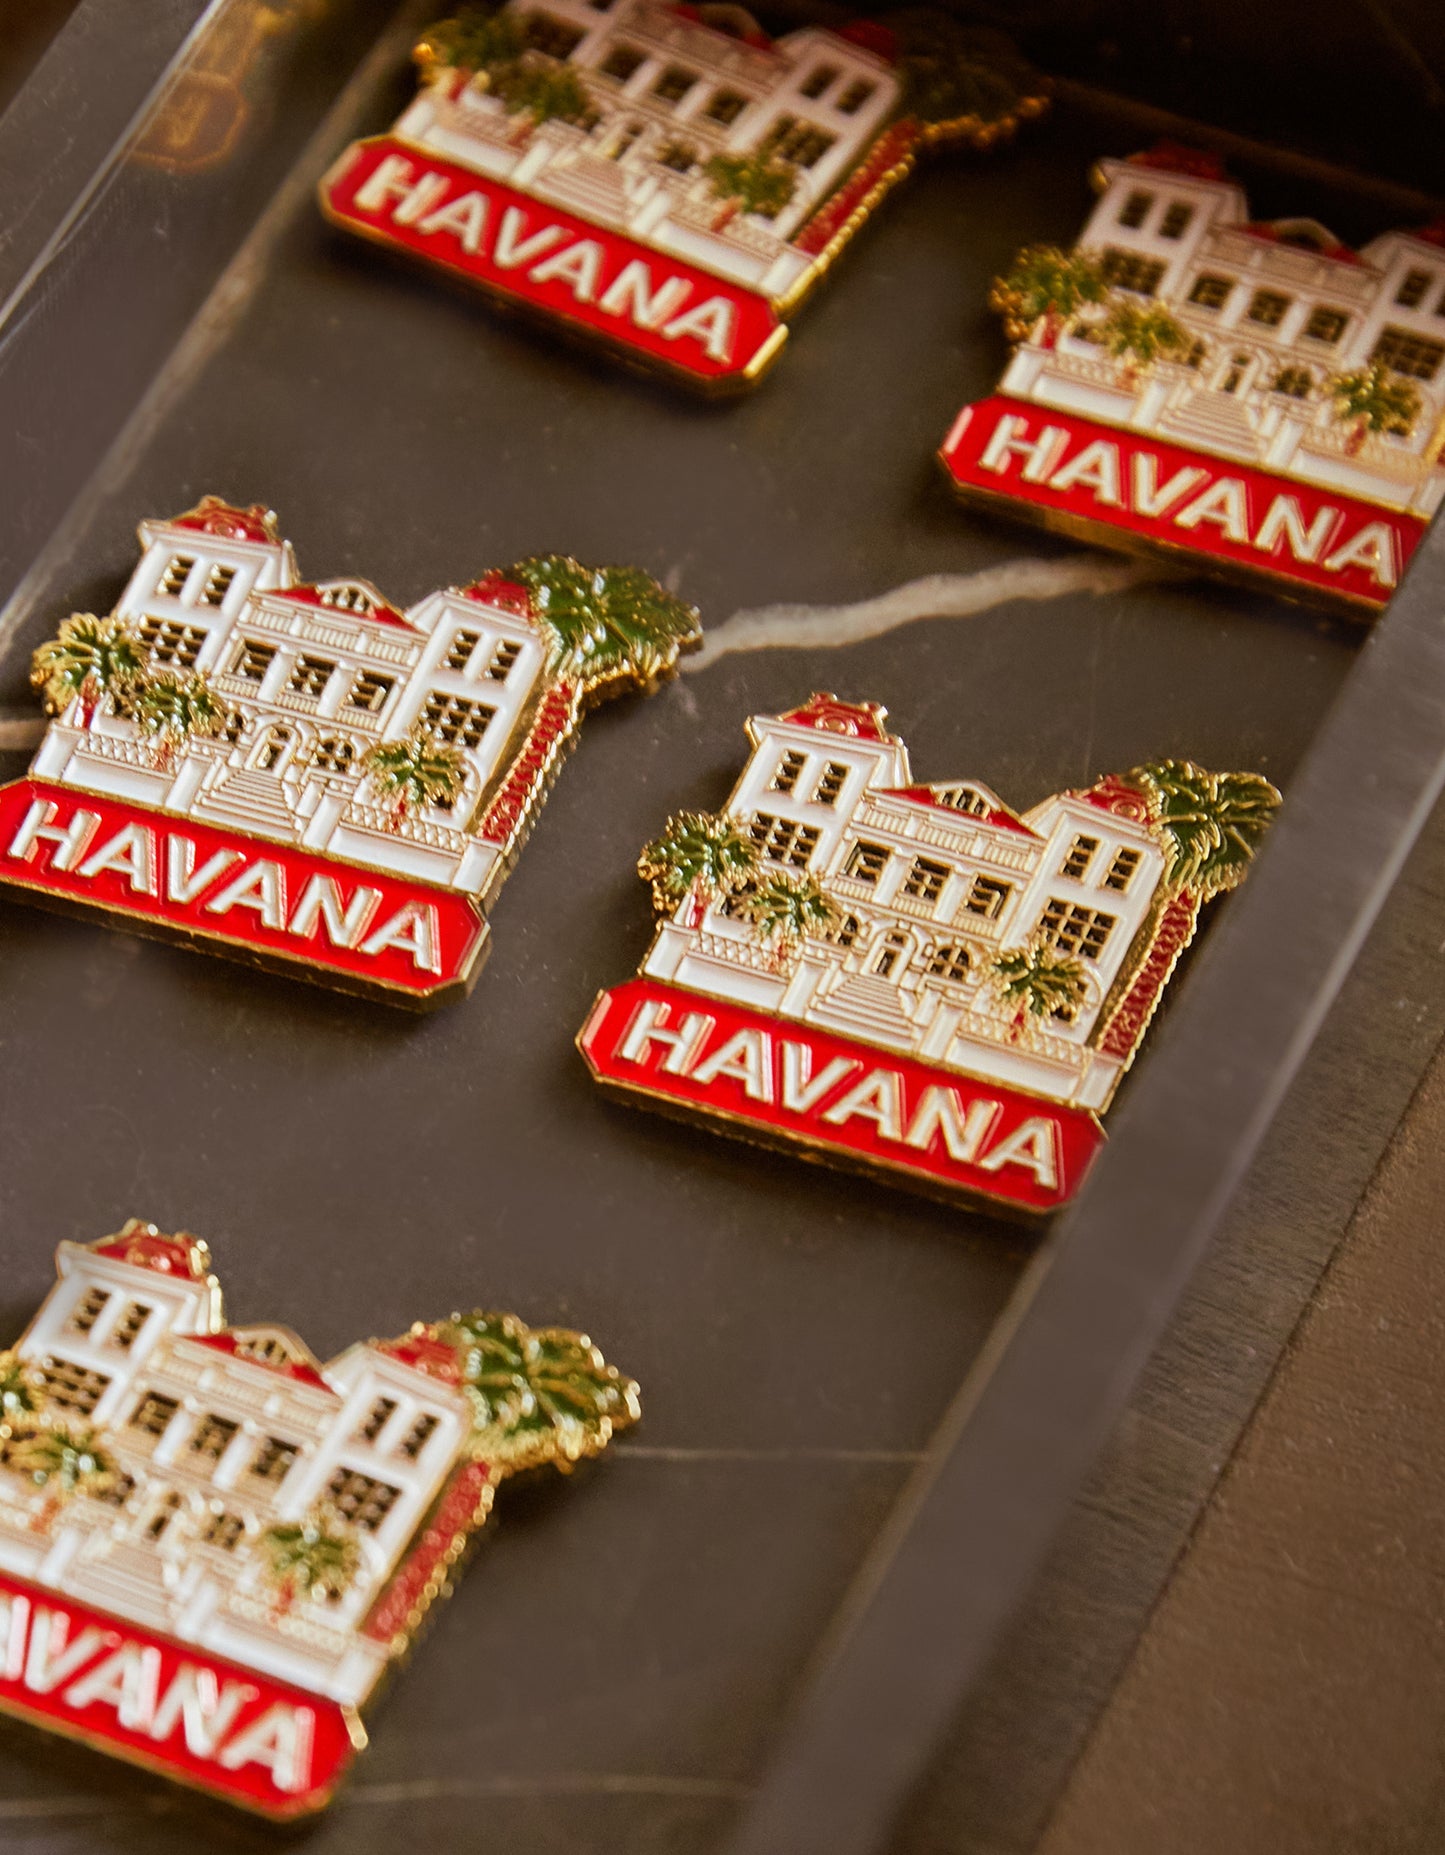 Hotel Havana Magnet